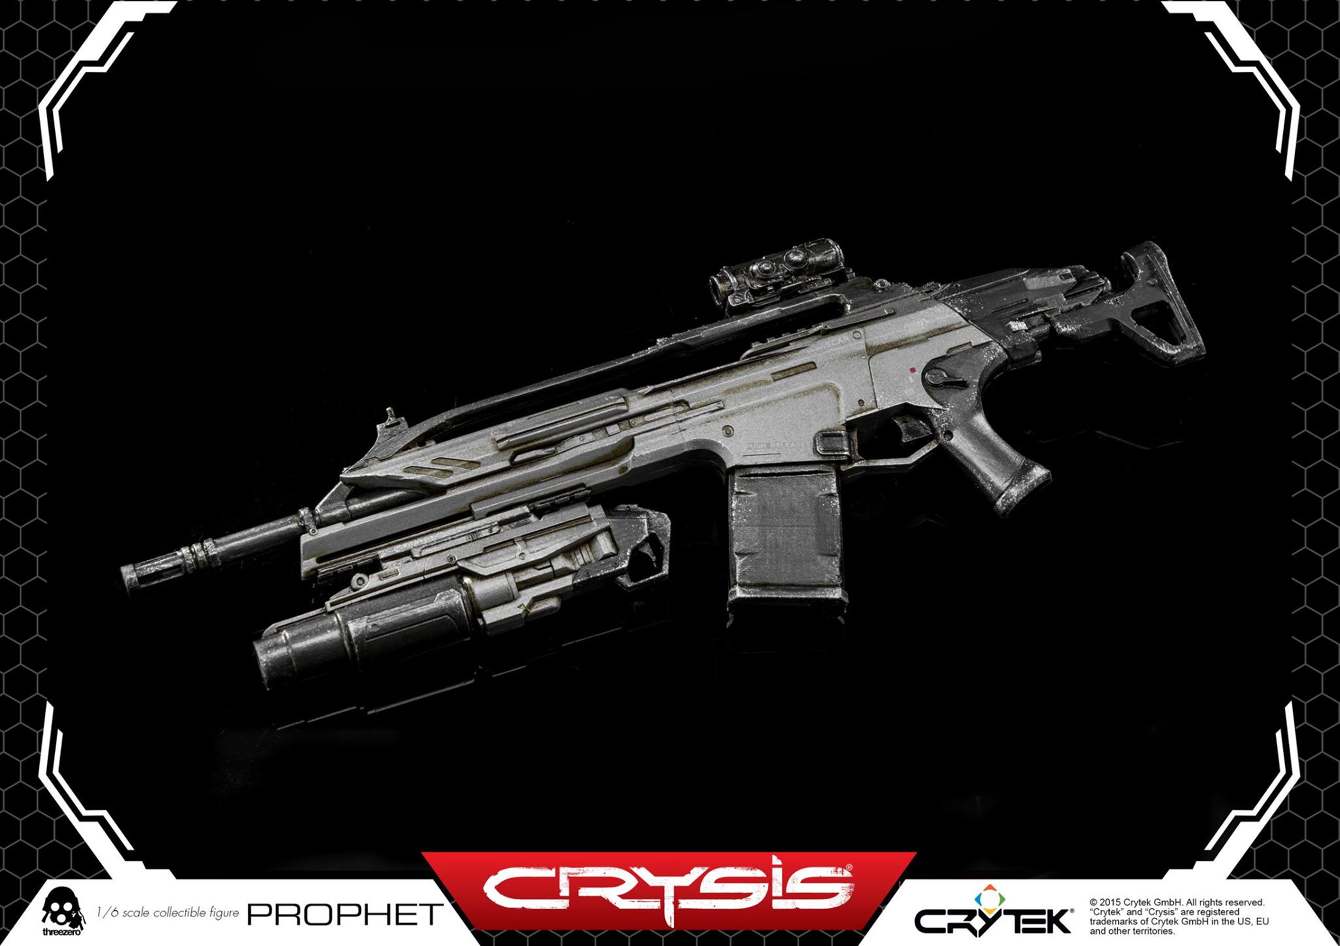 ThreeZero-Crysis-video-game-Prophet-CRY112_1340_c.jpg